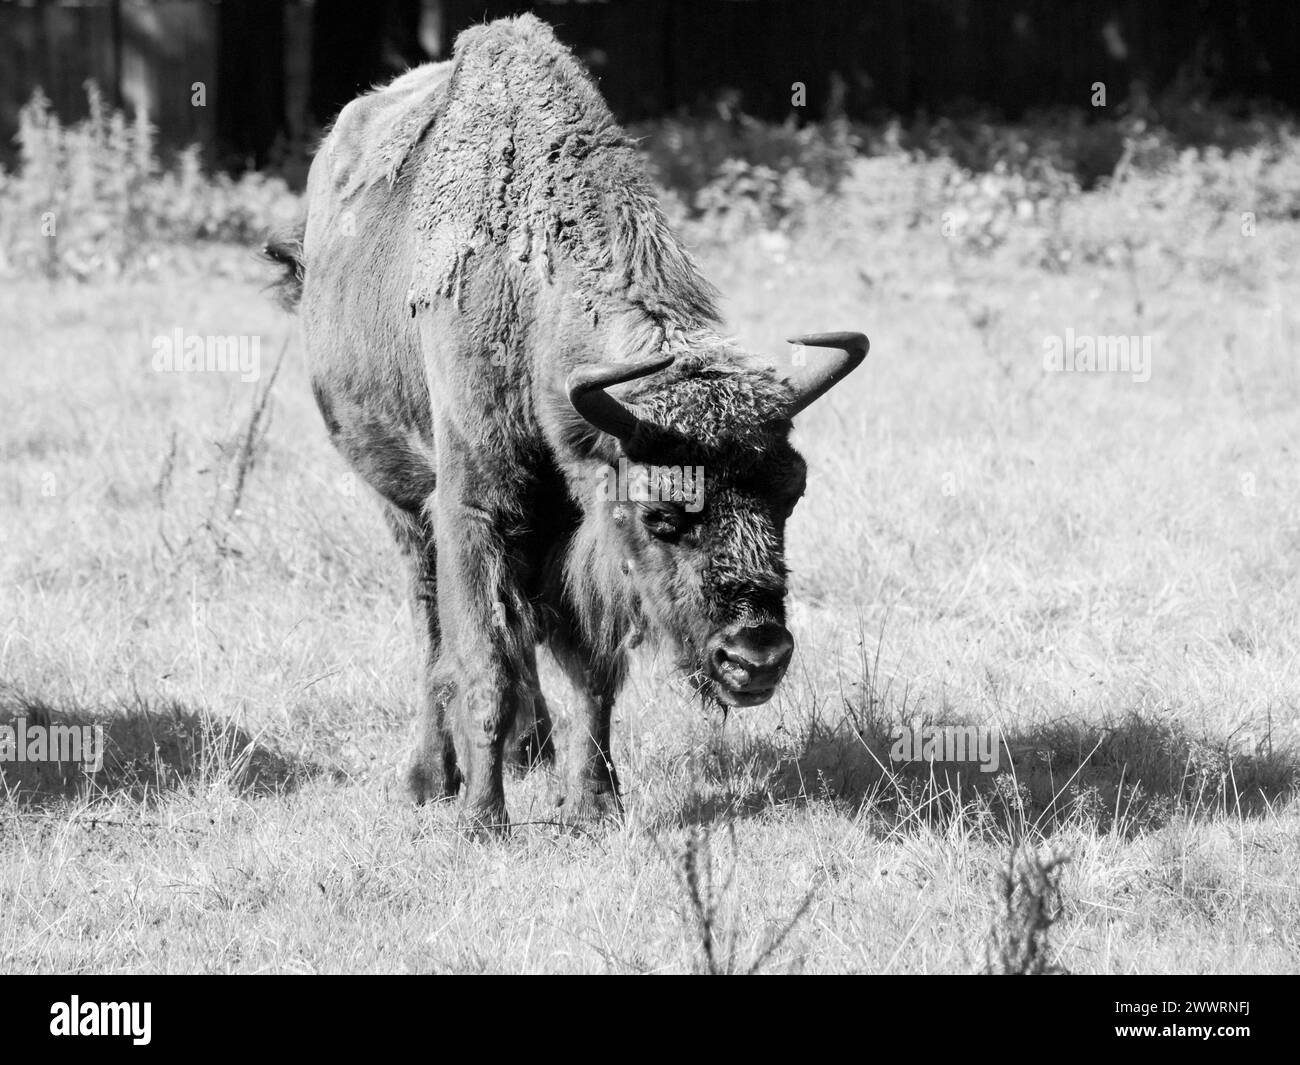 Bisonte di legno europeo in pericolo, o wisent, nella foresta primordiale di Bialowieza, in Polonia e in Bielorussia. Immagine in bianco e nero. Foto Stock